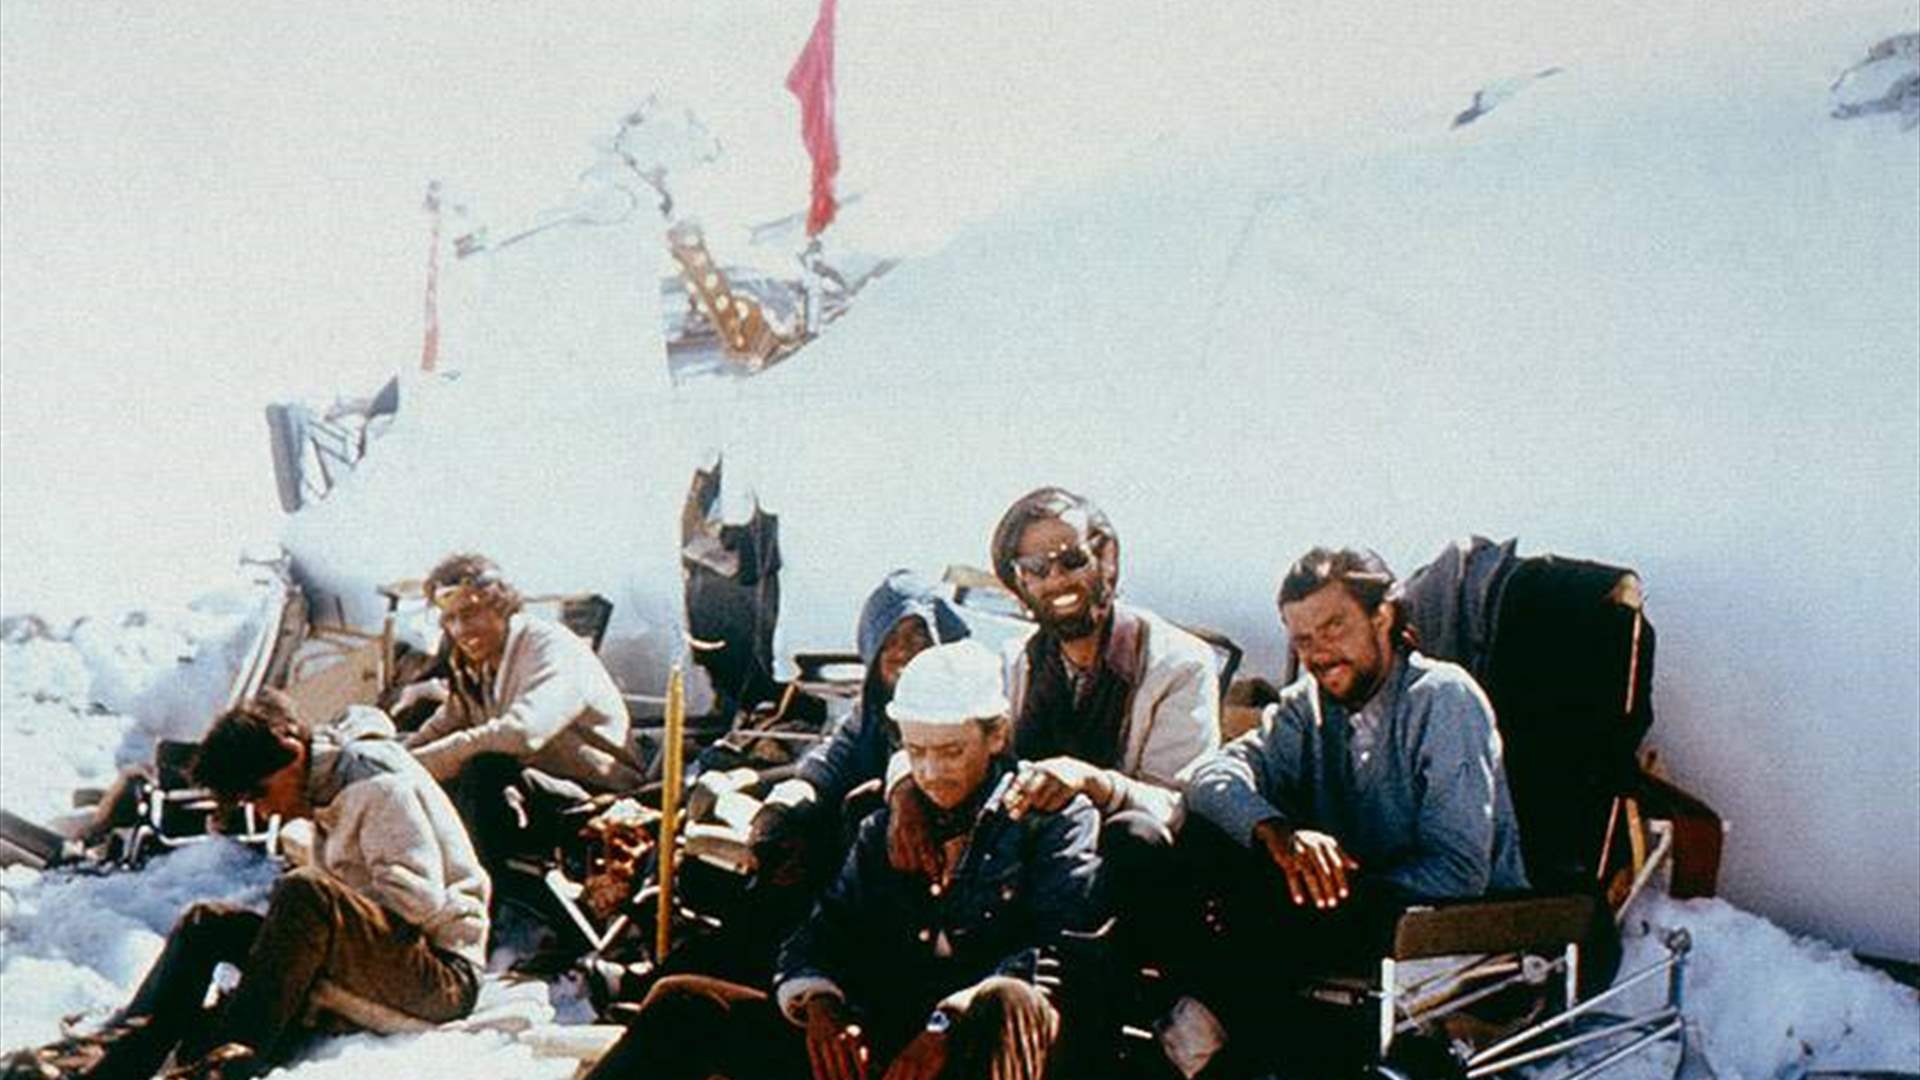 فيلم عن تحطم طائرة في جبال الأنديز عام 1972 يركّز على قصة من لم ينجوا